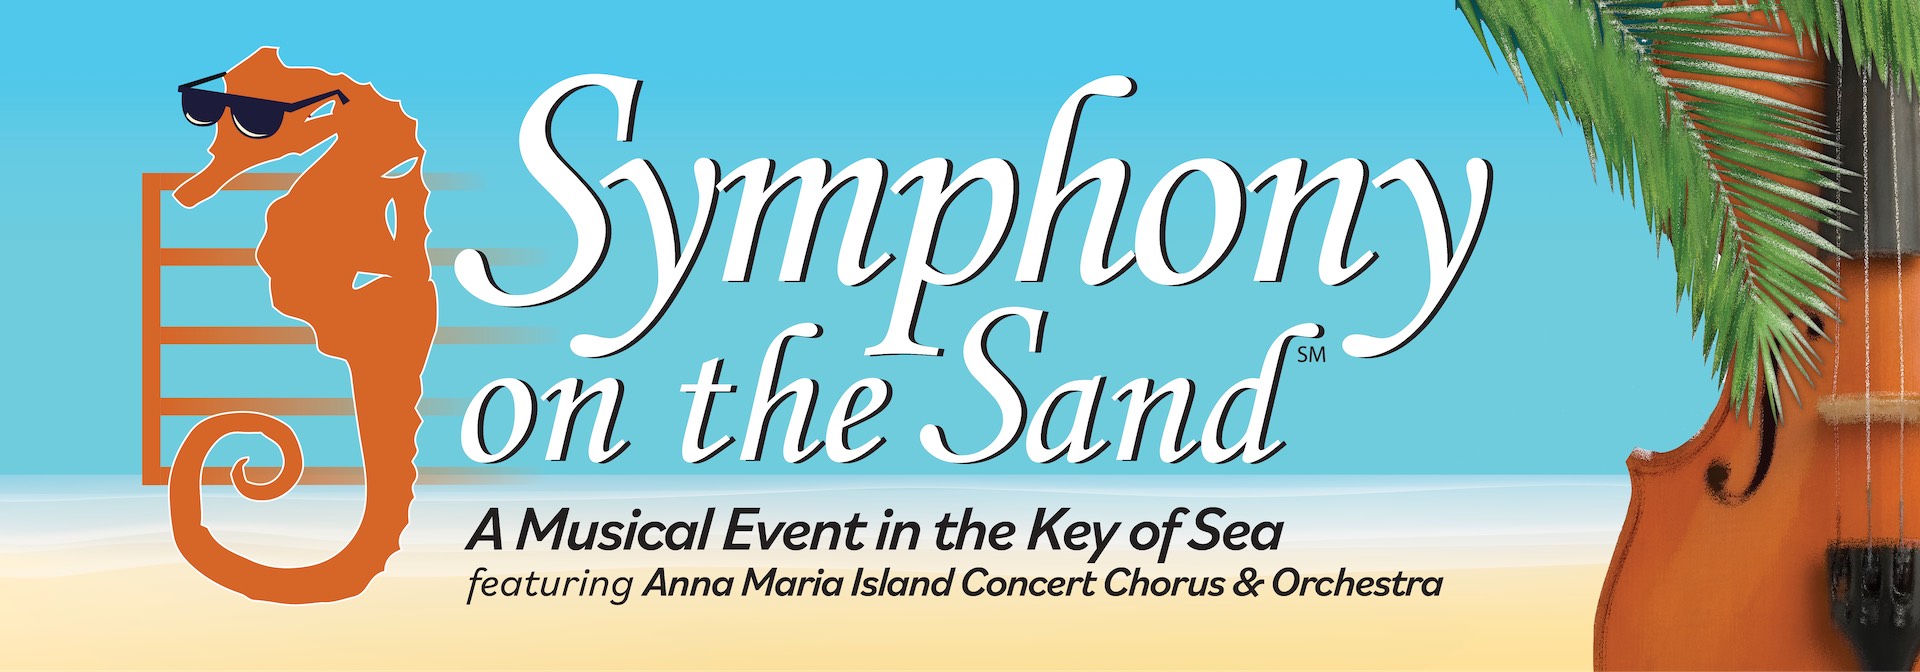 Symphony on the Sand